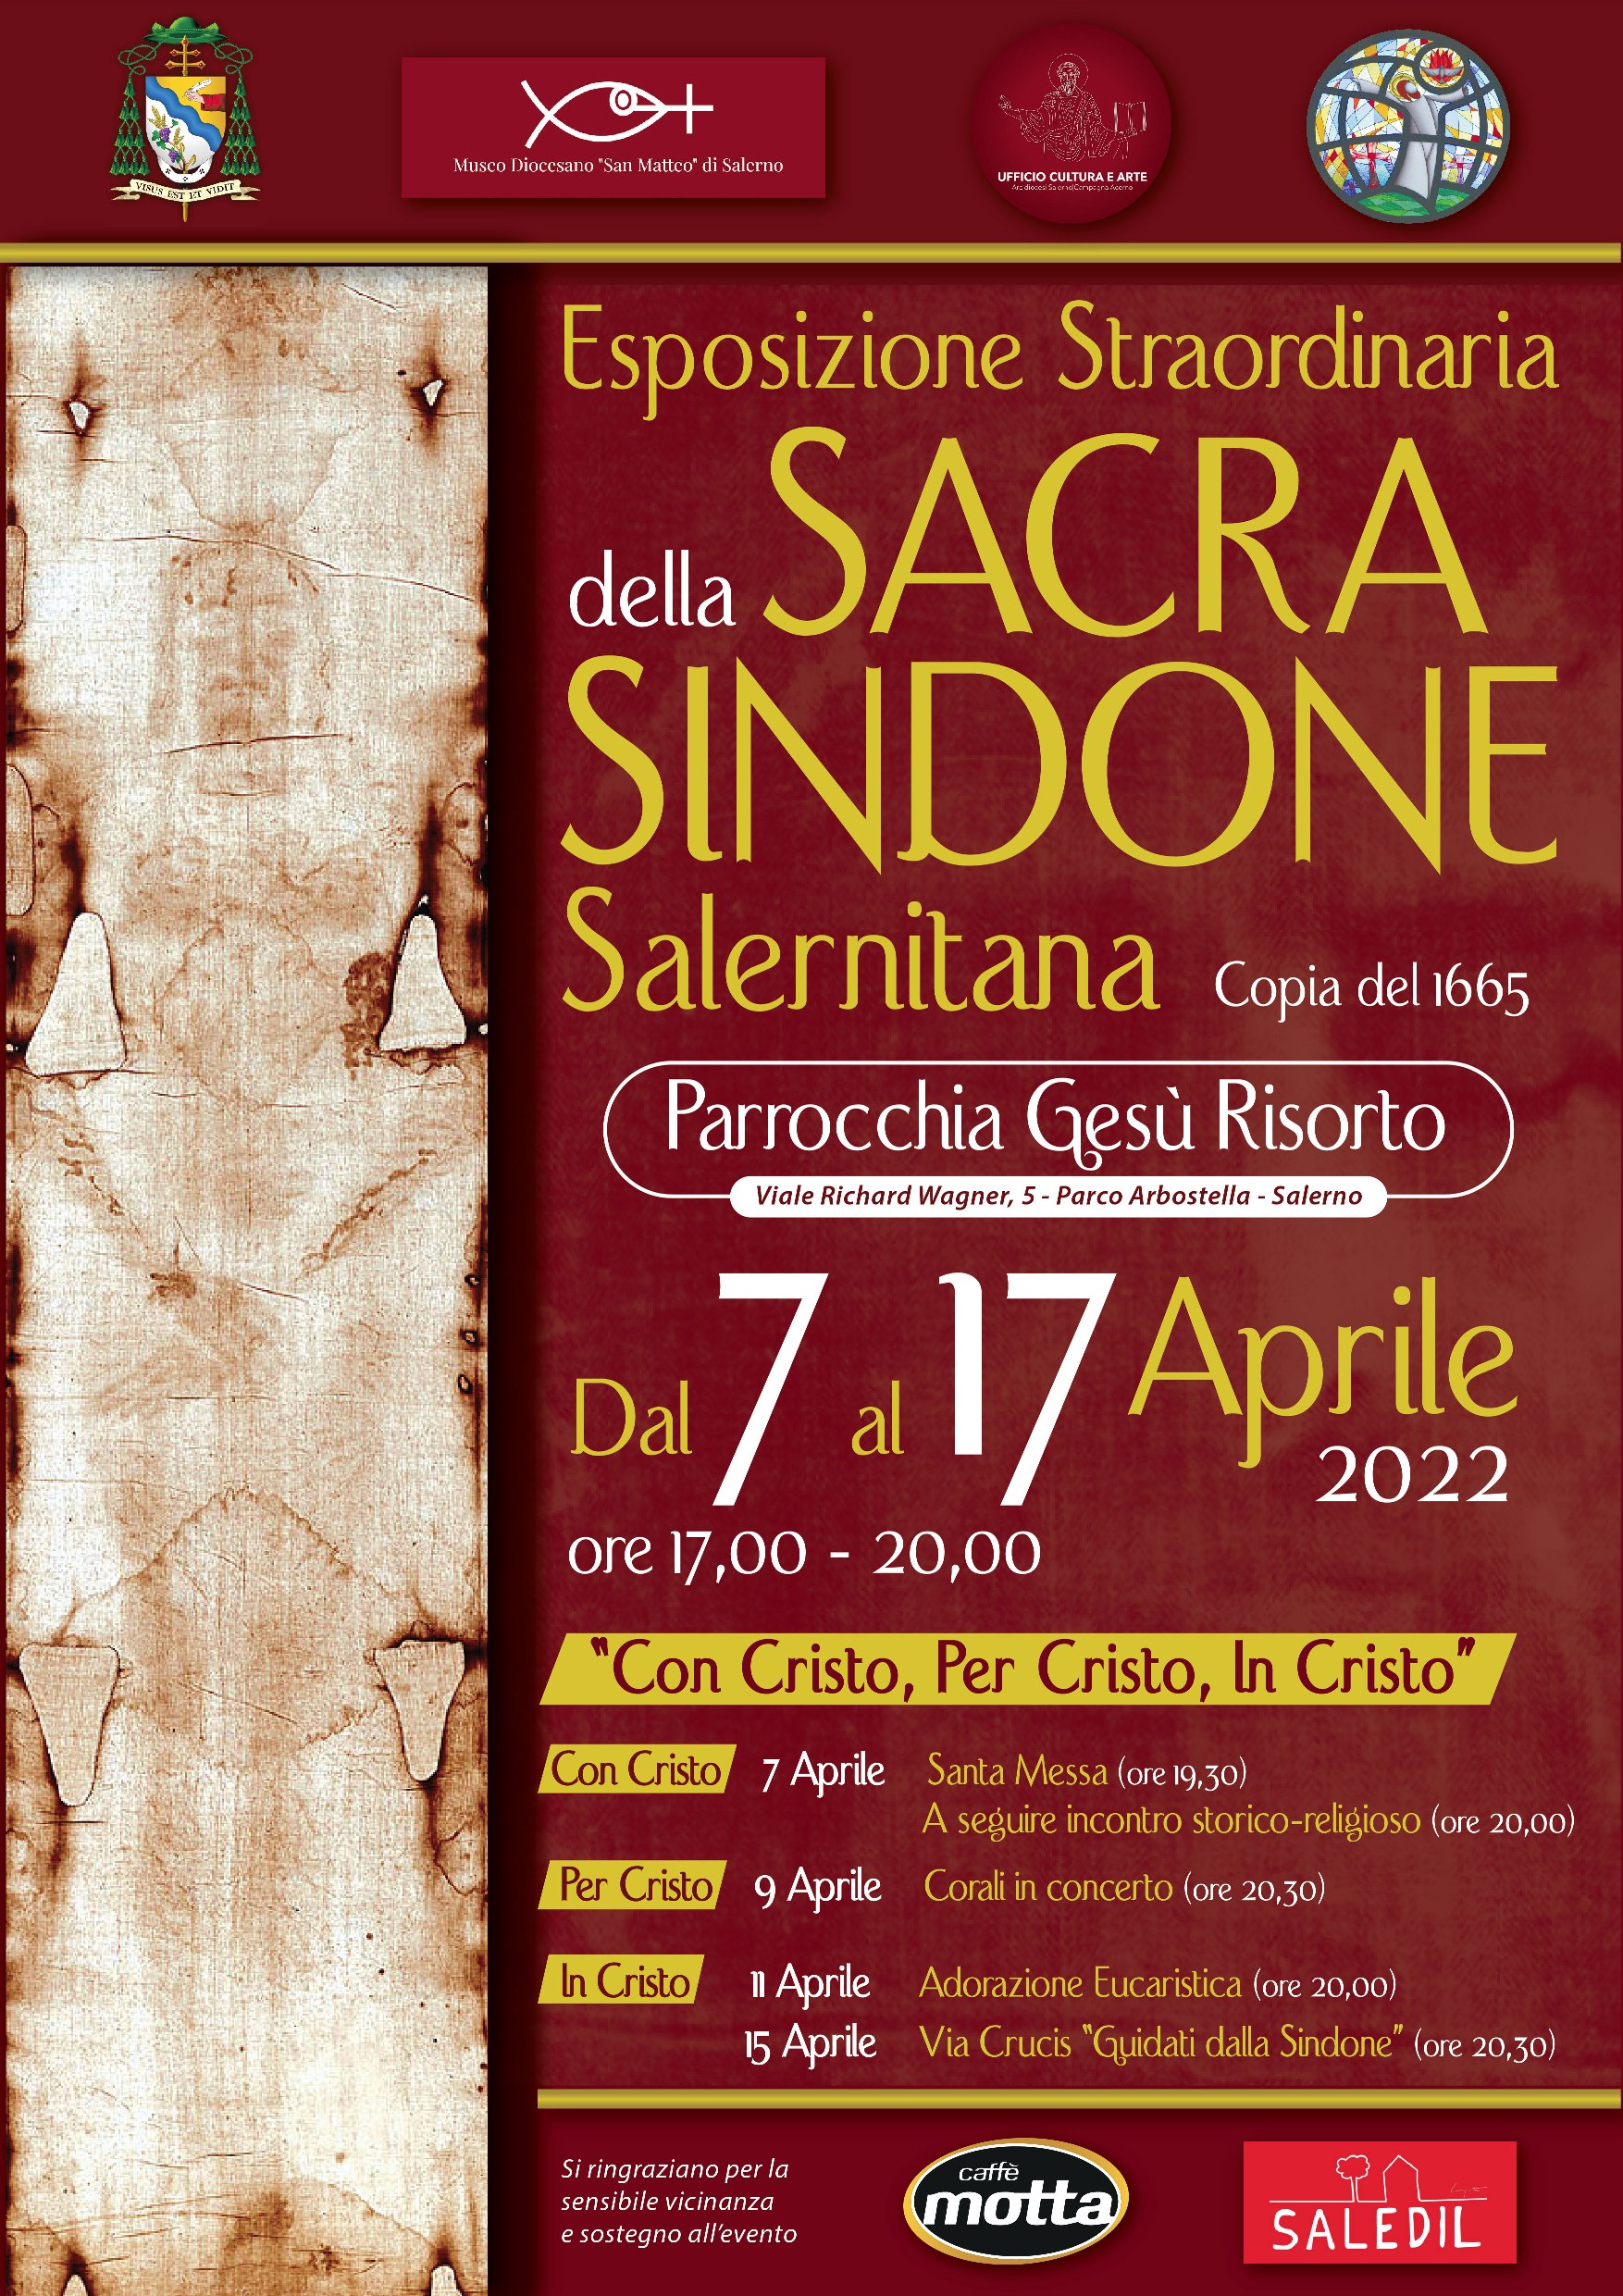 Salerno: Parrocchia Gesù Risorto, all’Arbostella esposizione straordinaria “Sacra Sindone Salernitana” 7 -17 Aprile 2022